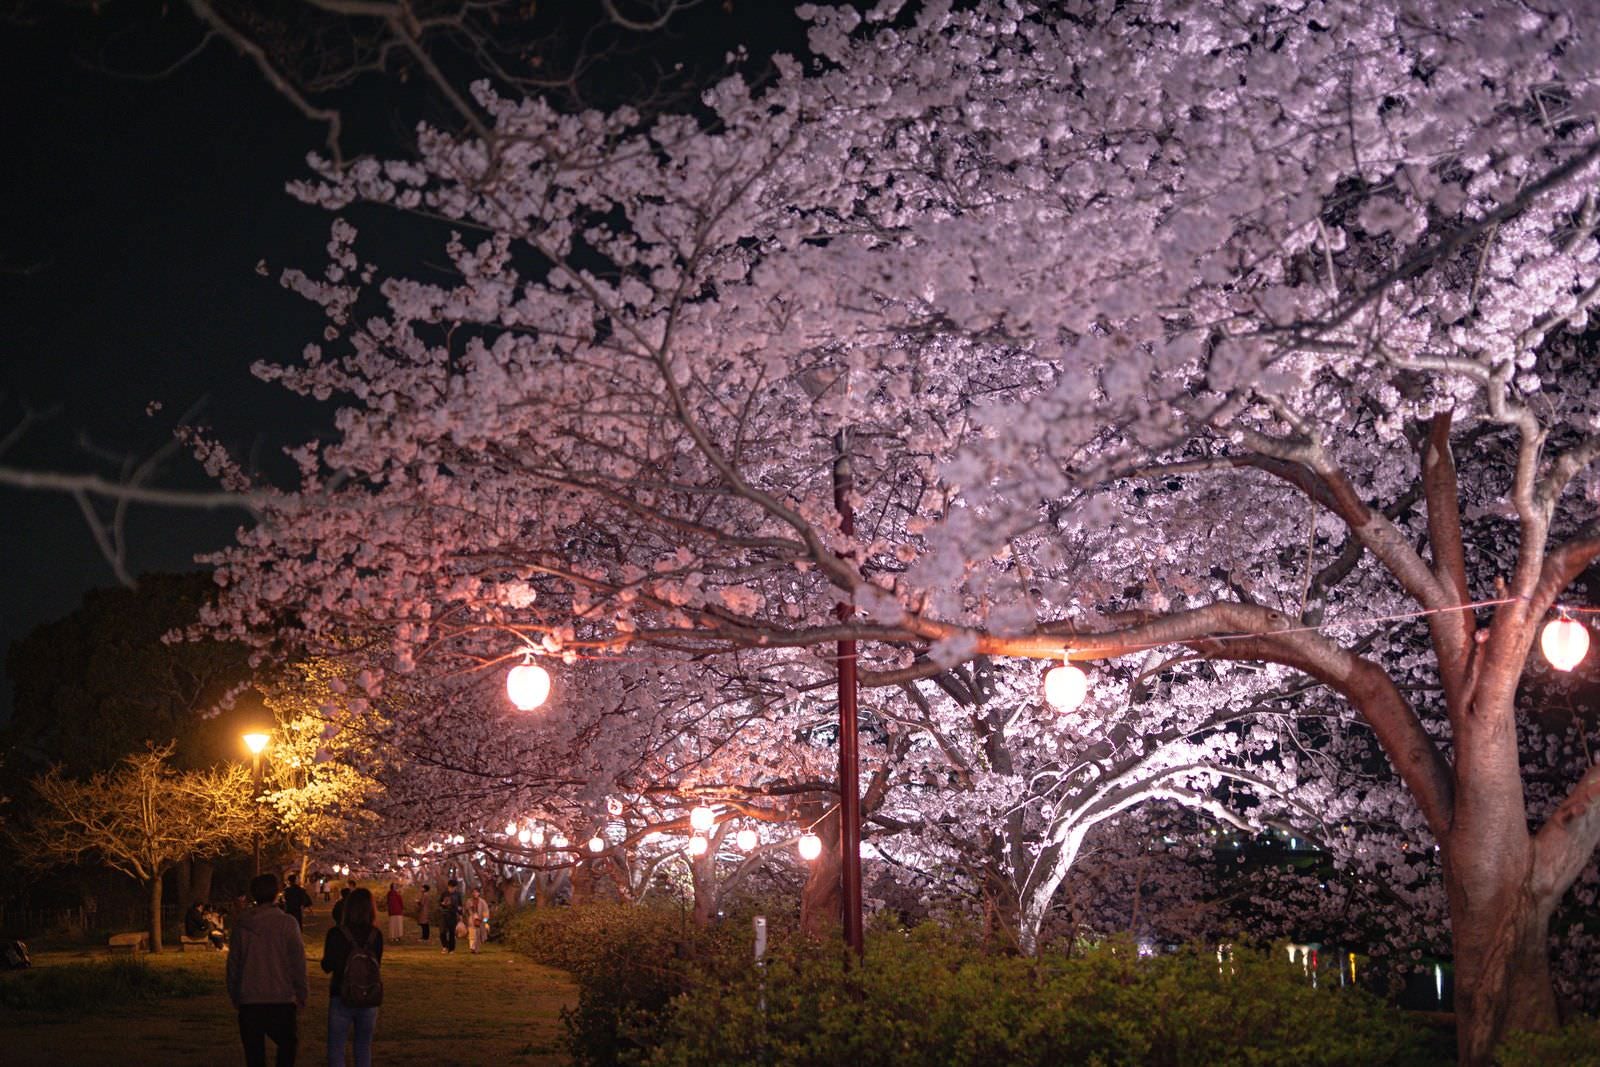 「ライトアップされた夜桜を見る恋人達 | フリー素材のぱくたそ」の写真